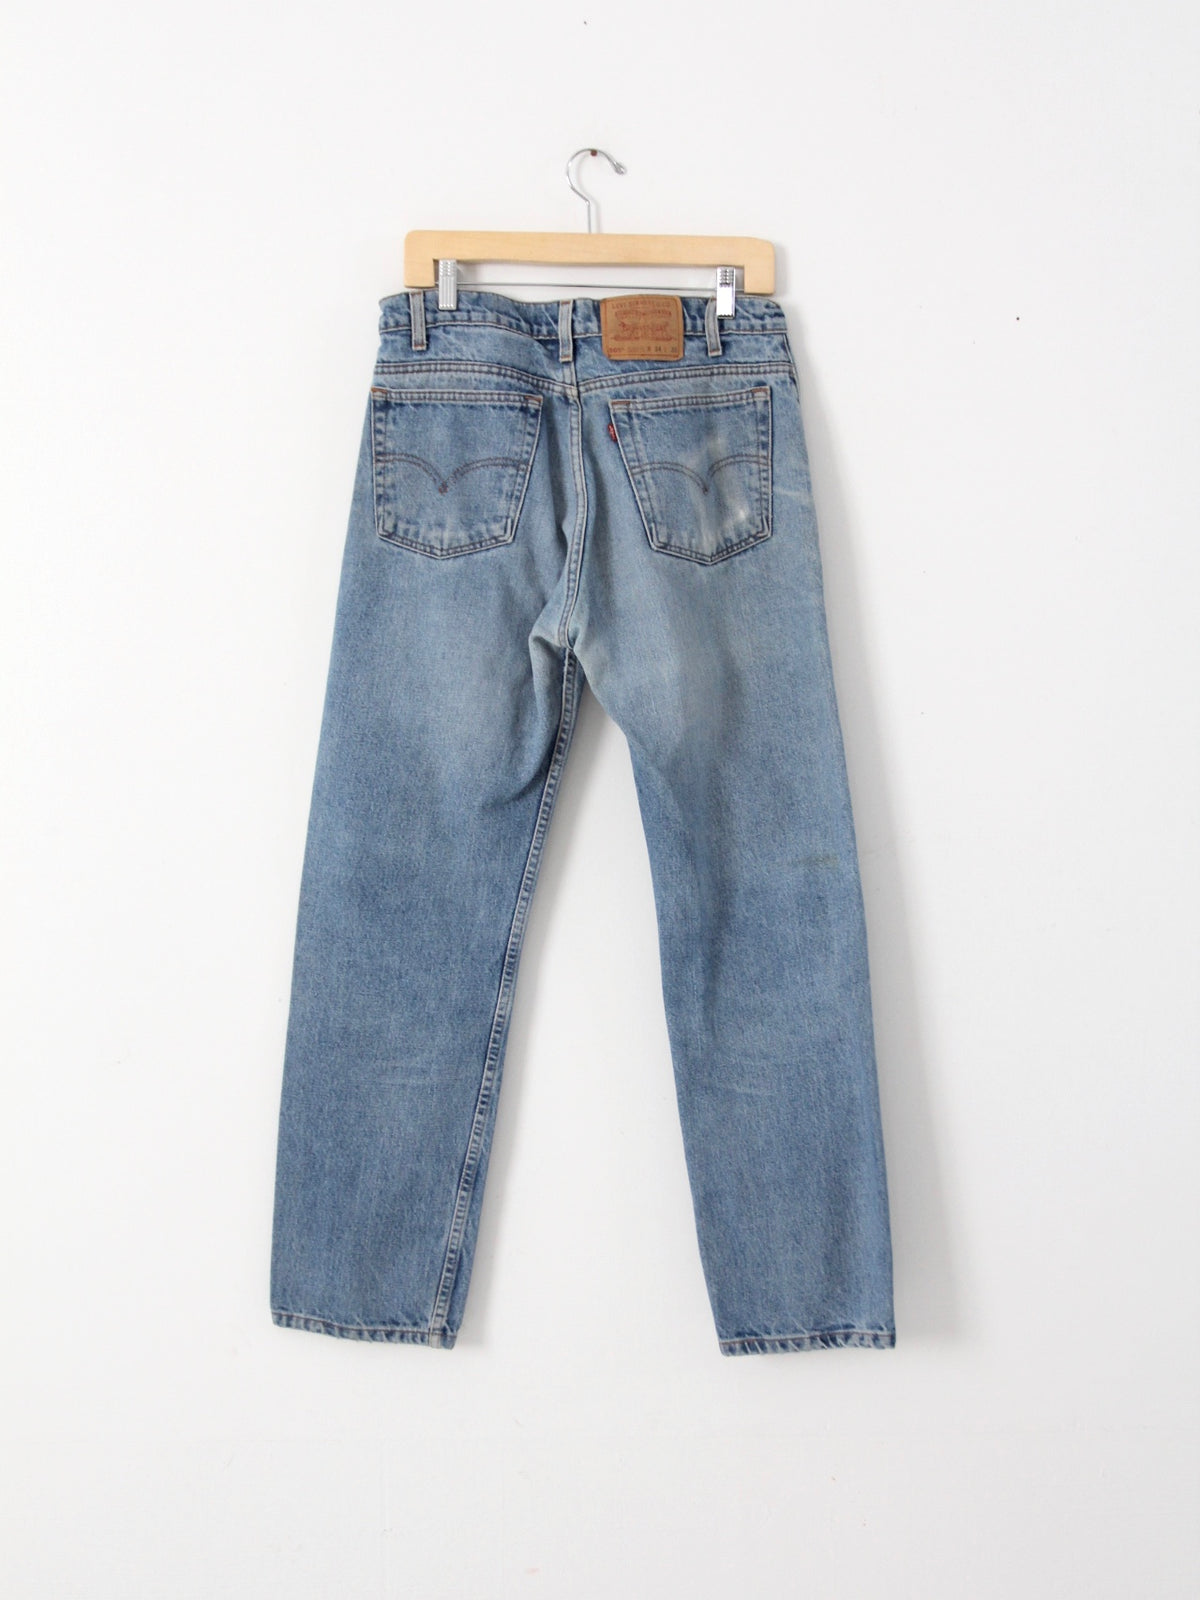 Levis 505 vintage jeans